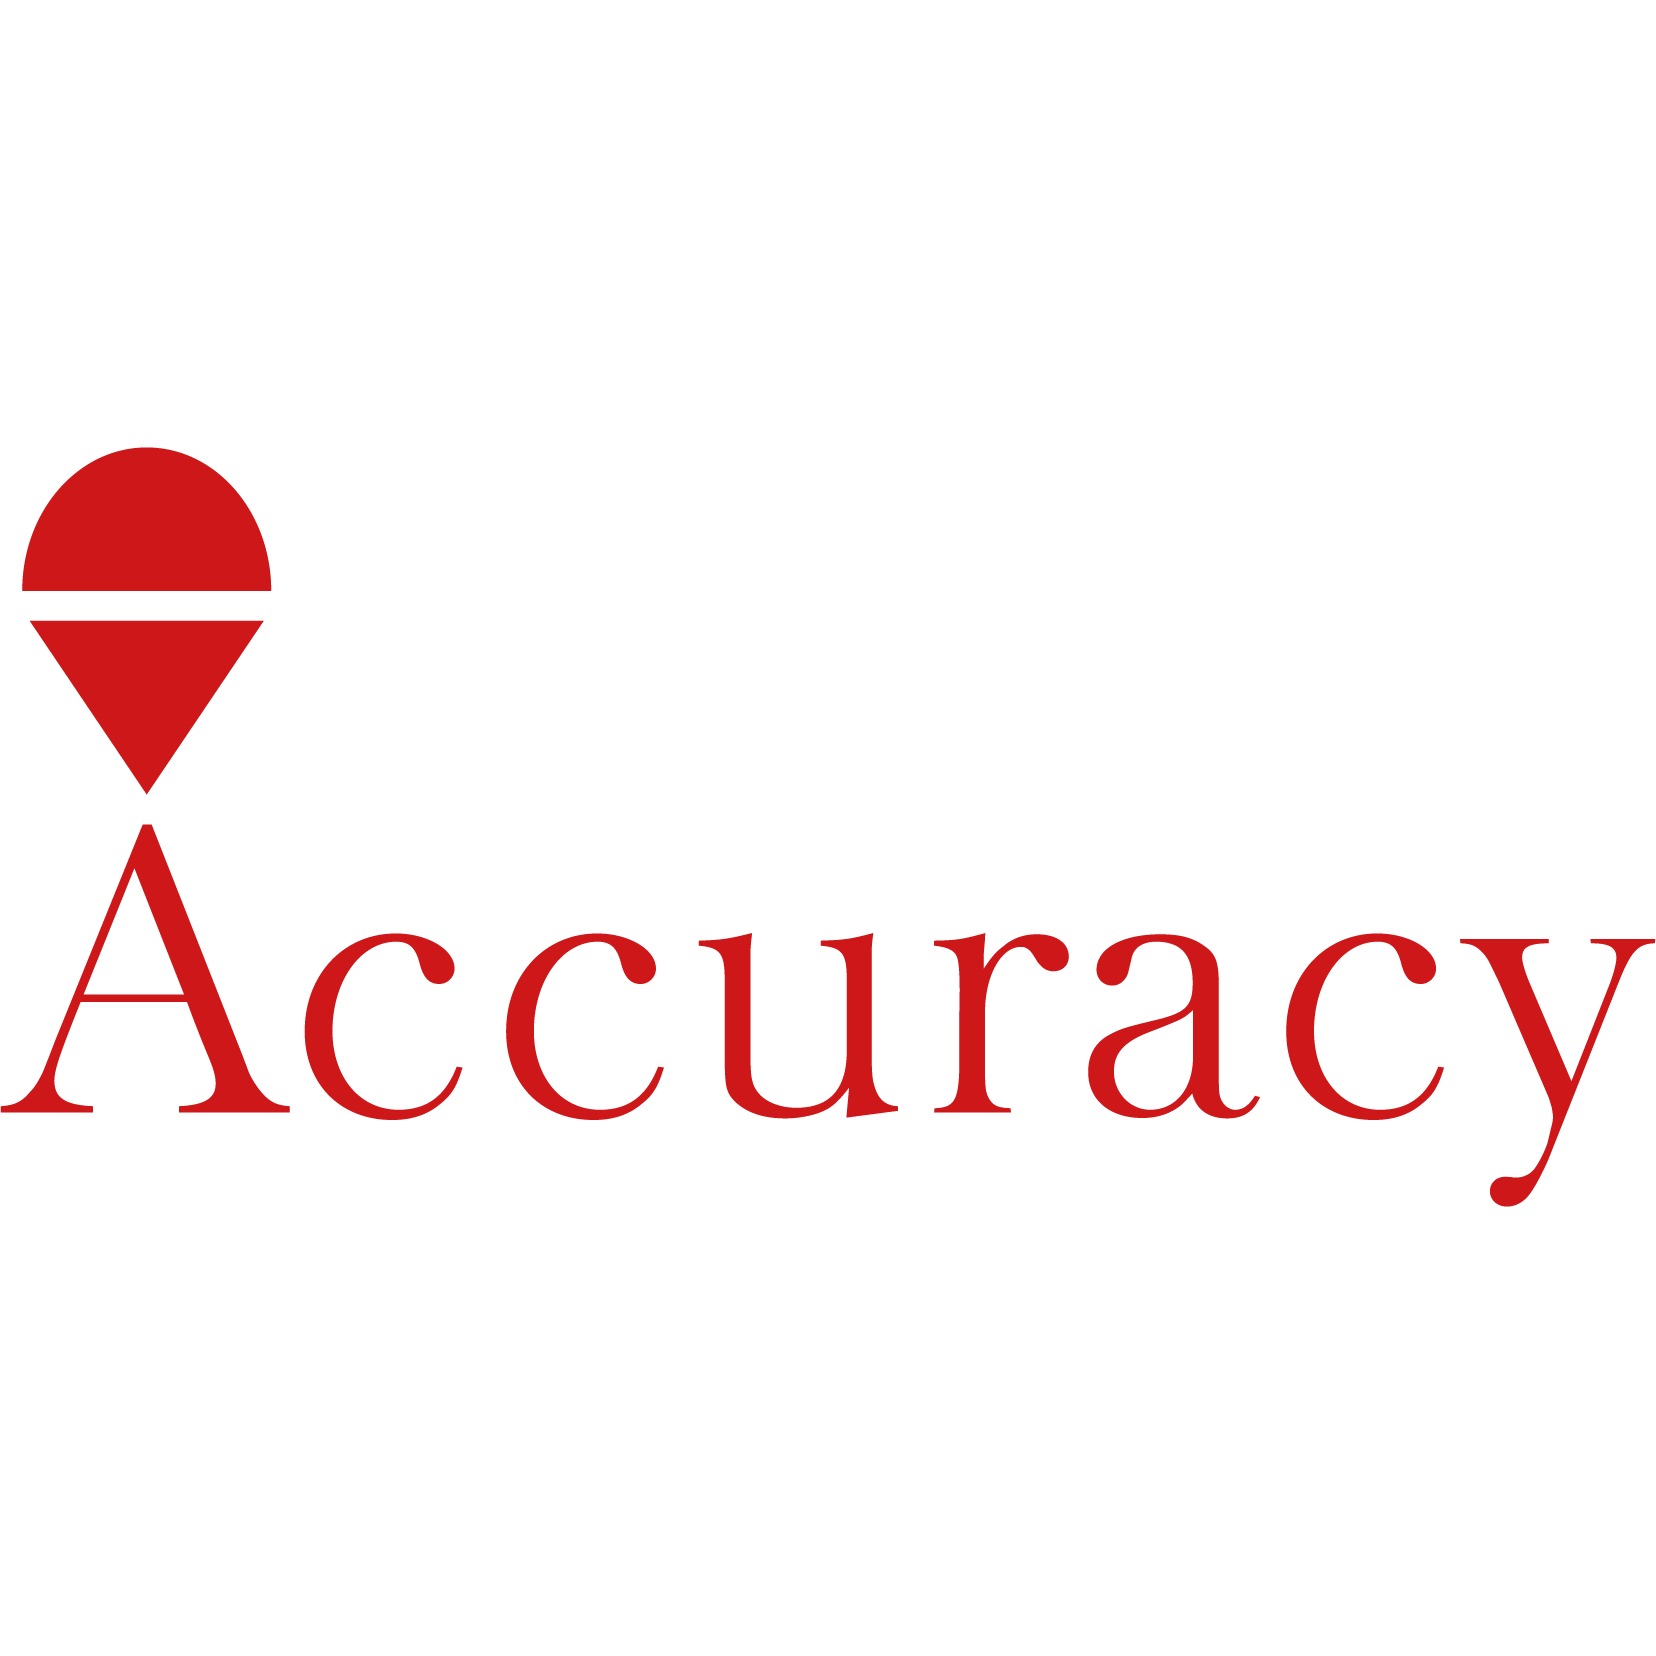 the Accuracy logo.